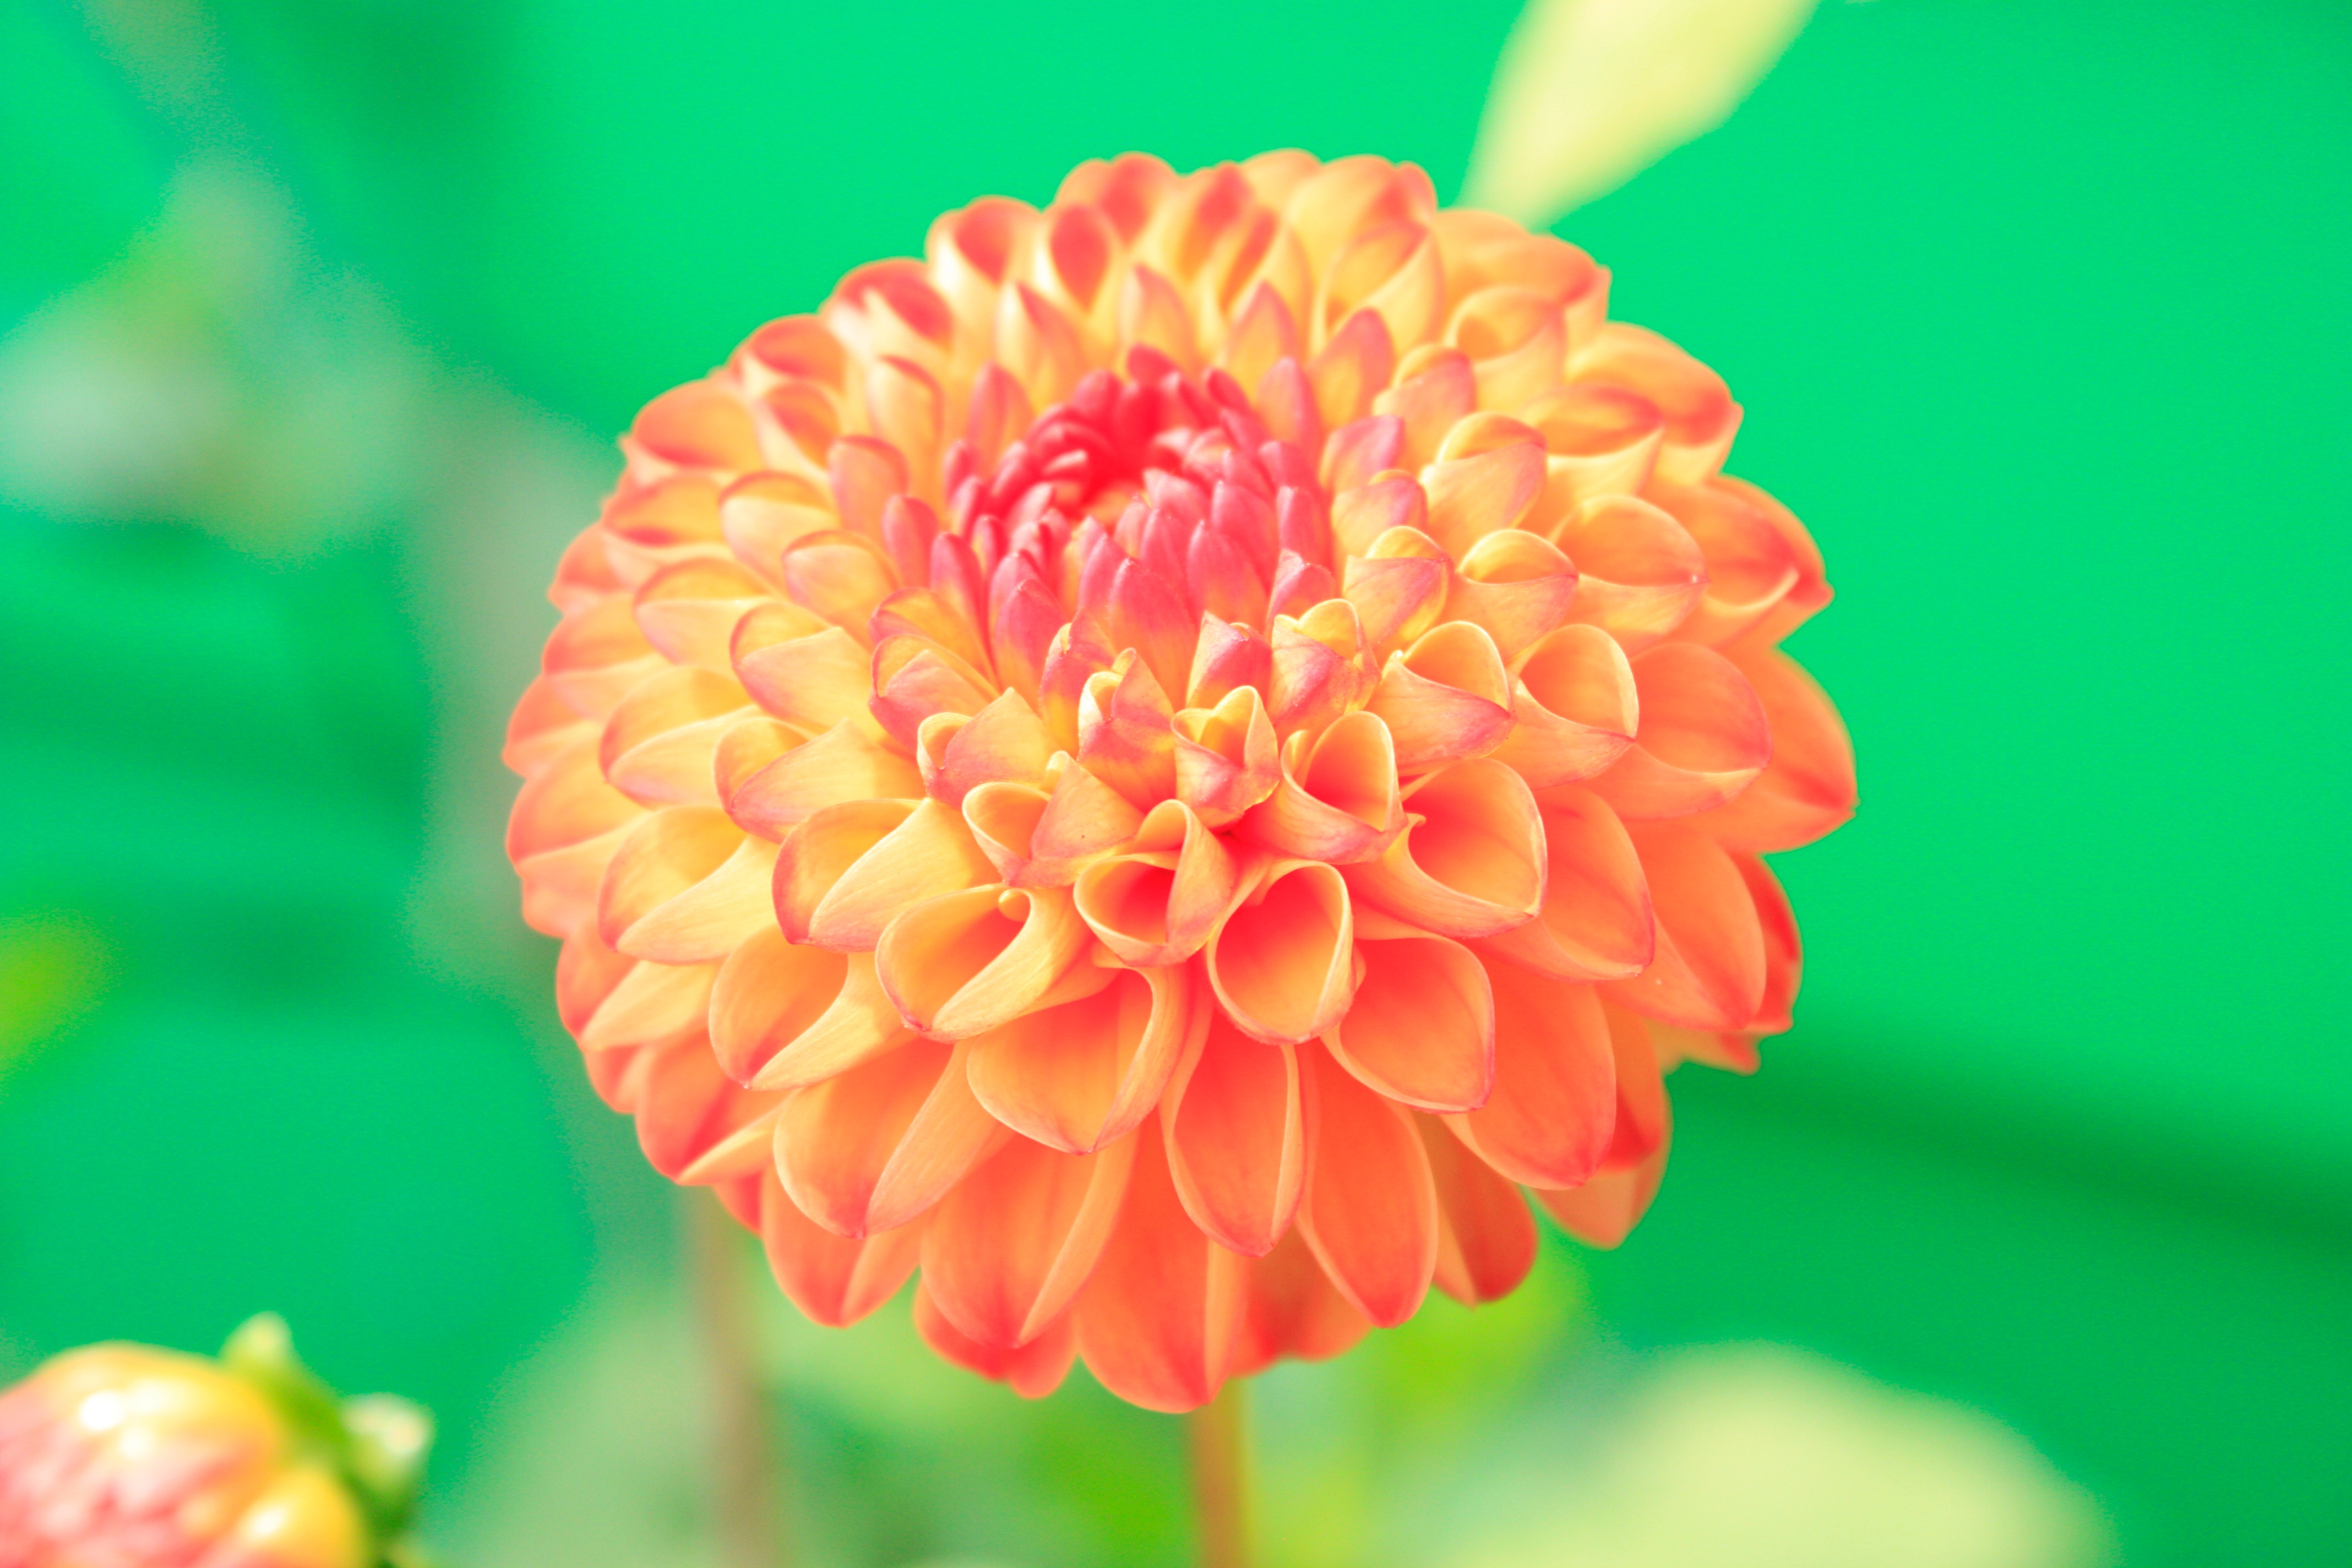 Orange petaled flower close-up photo